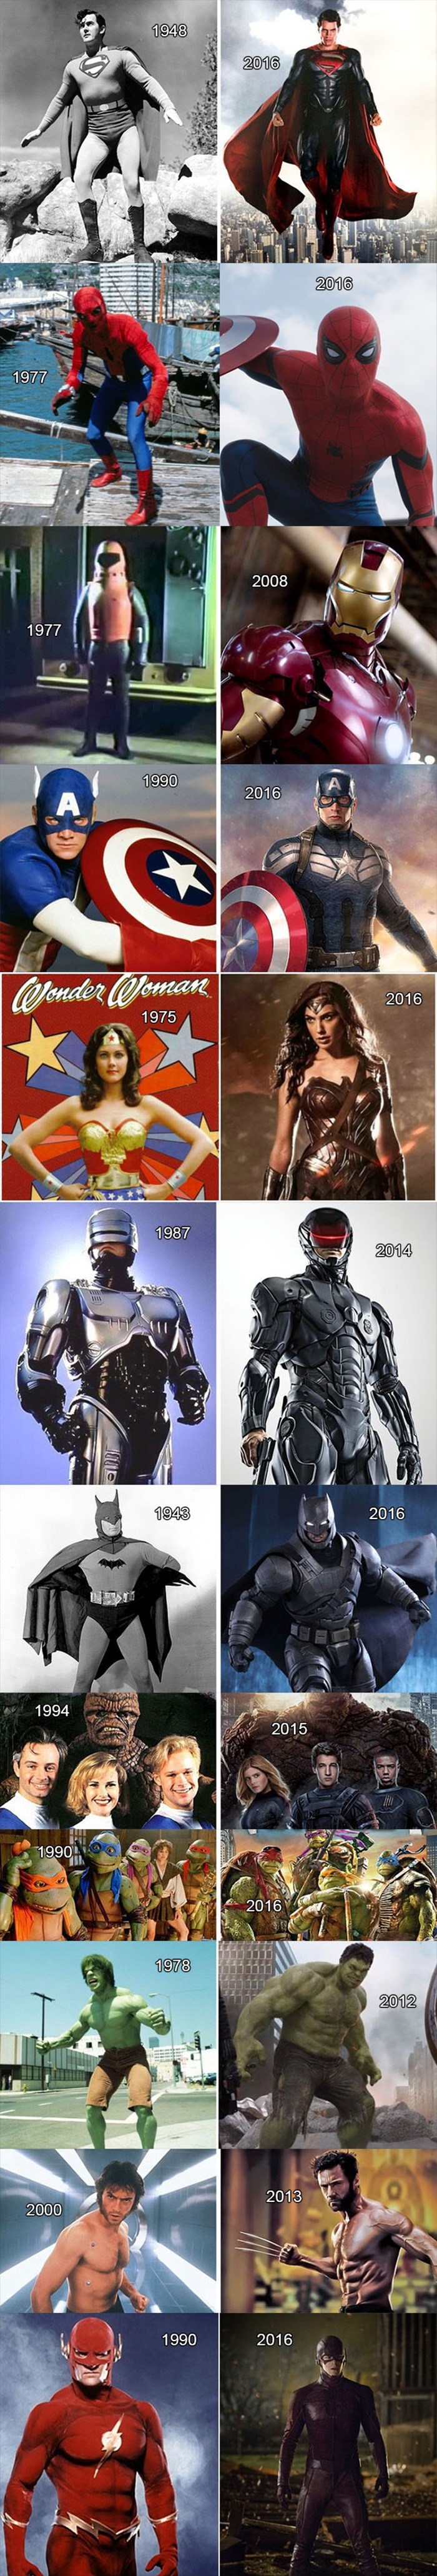 Kako su superjunaci izgledali nekad, a kako danas